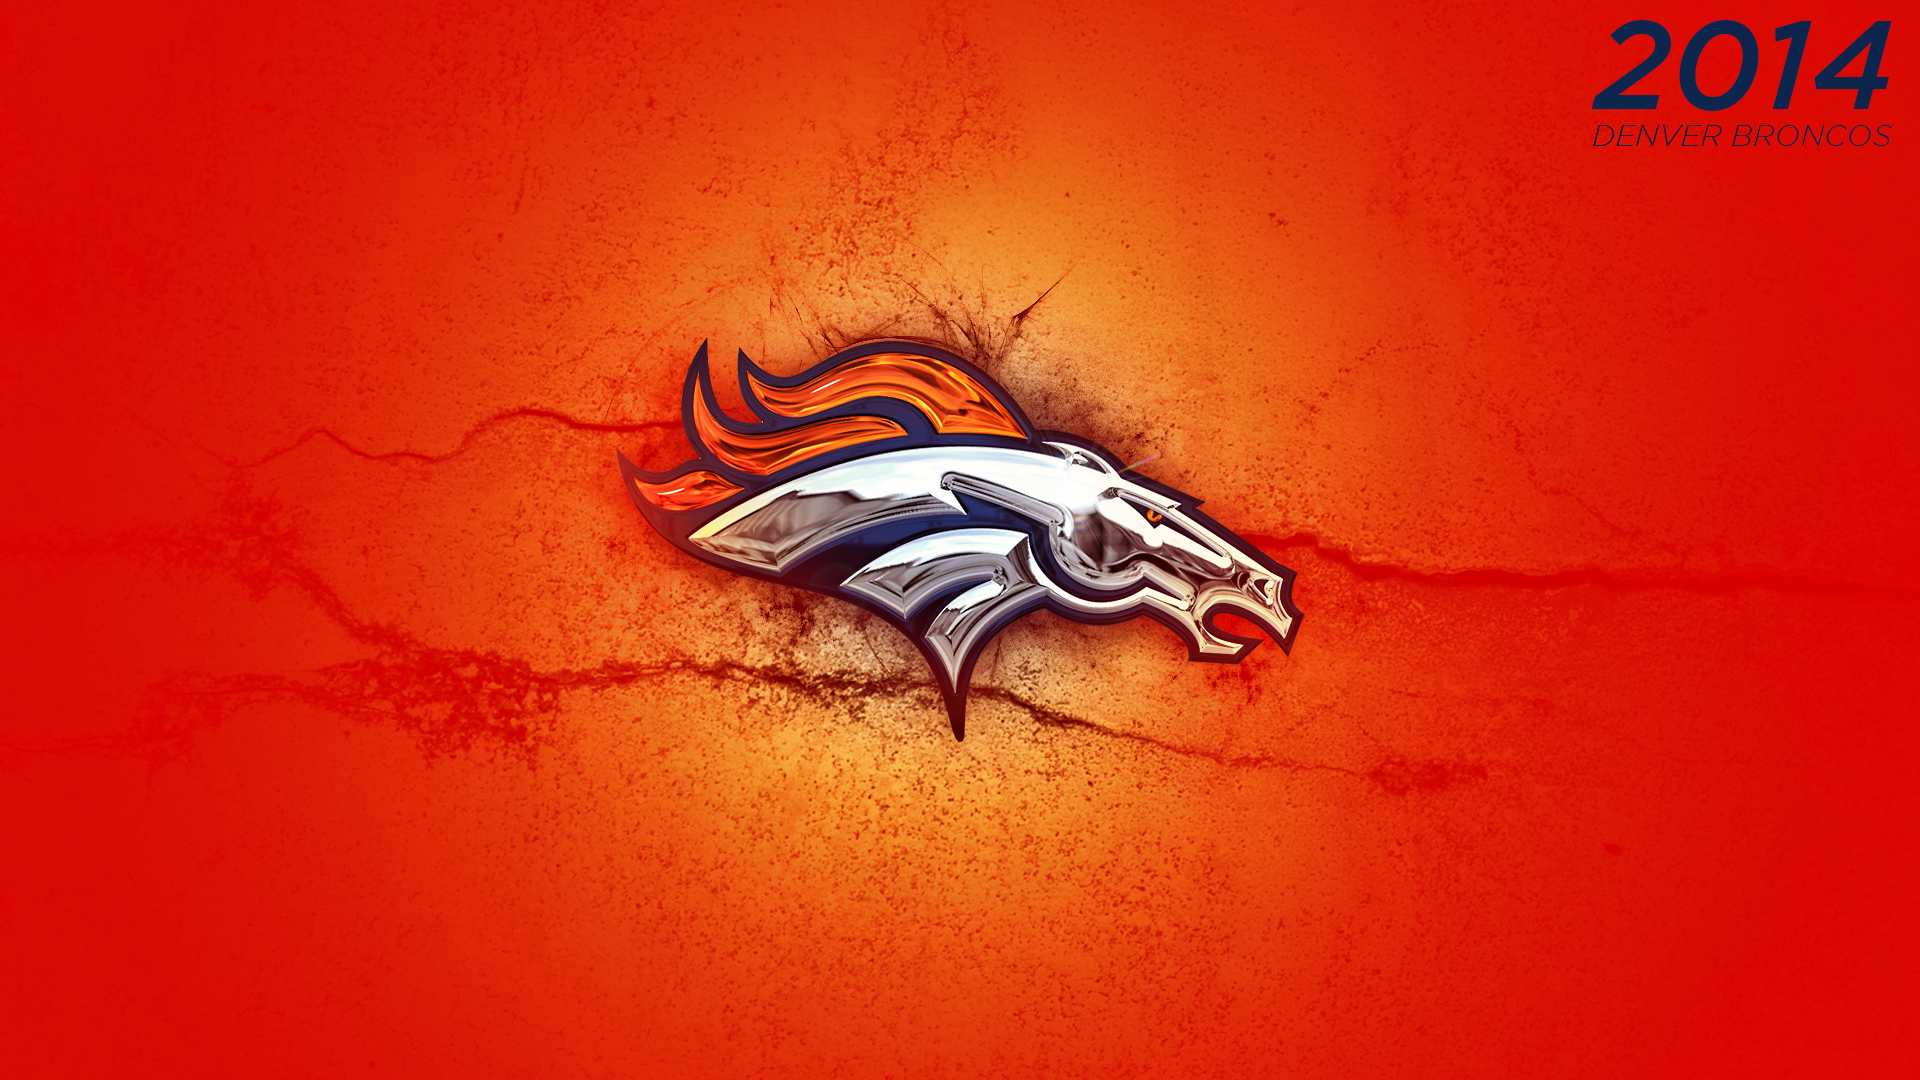 Denver Broncos Wallpaper 2014 2014 denver broncos logo 1920x1080